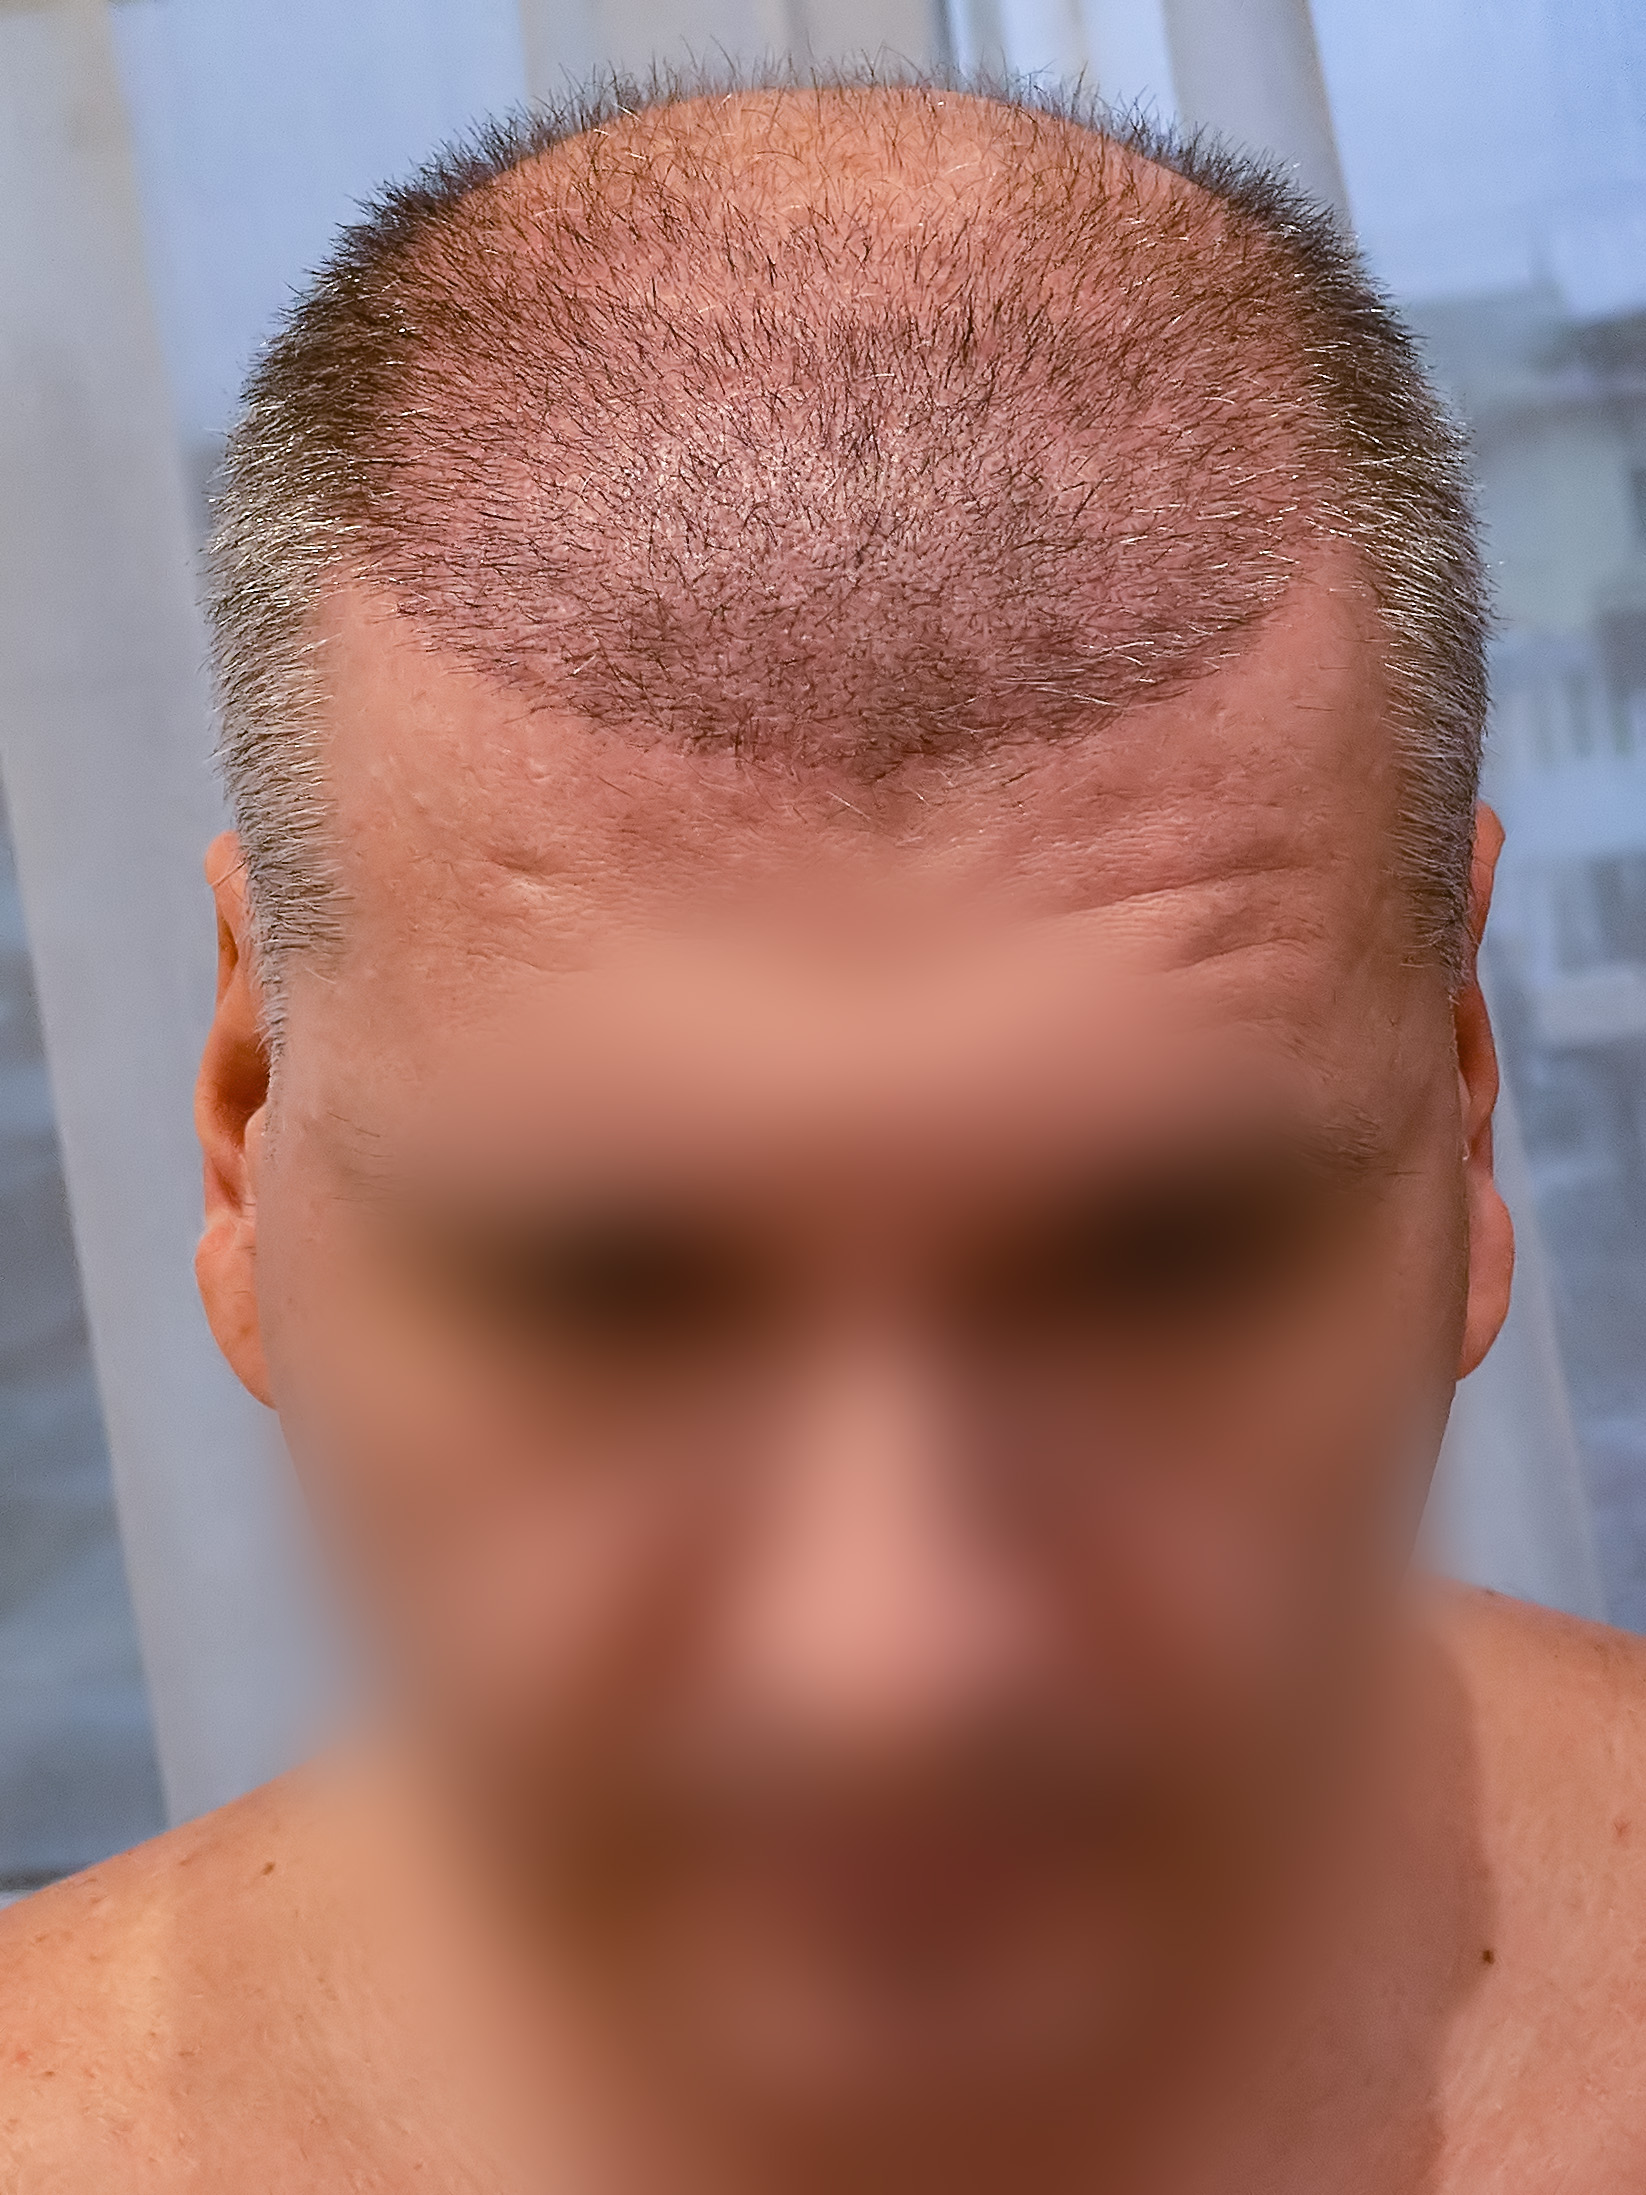 Пересадка волос красноярск